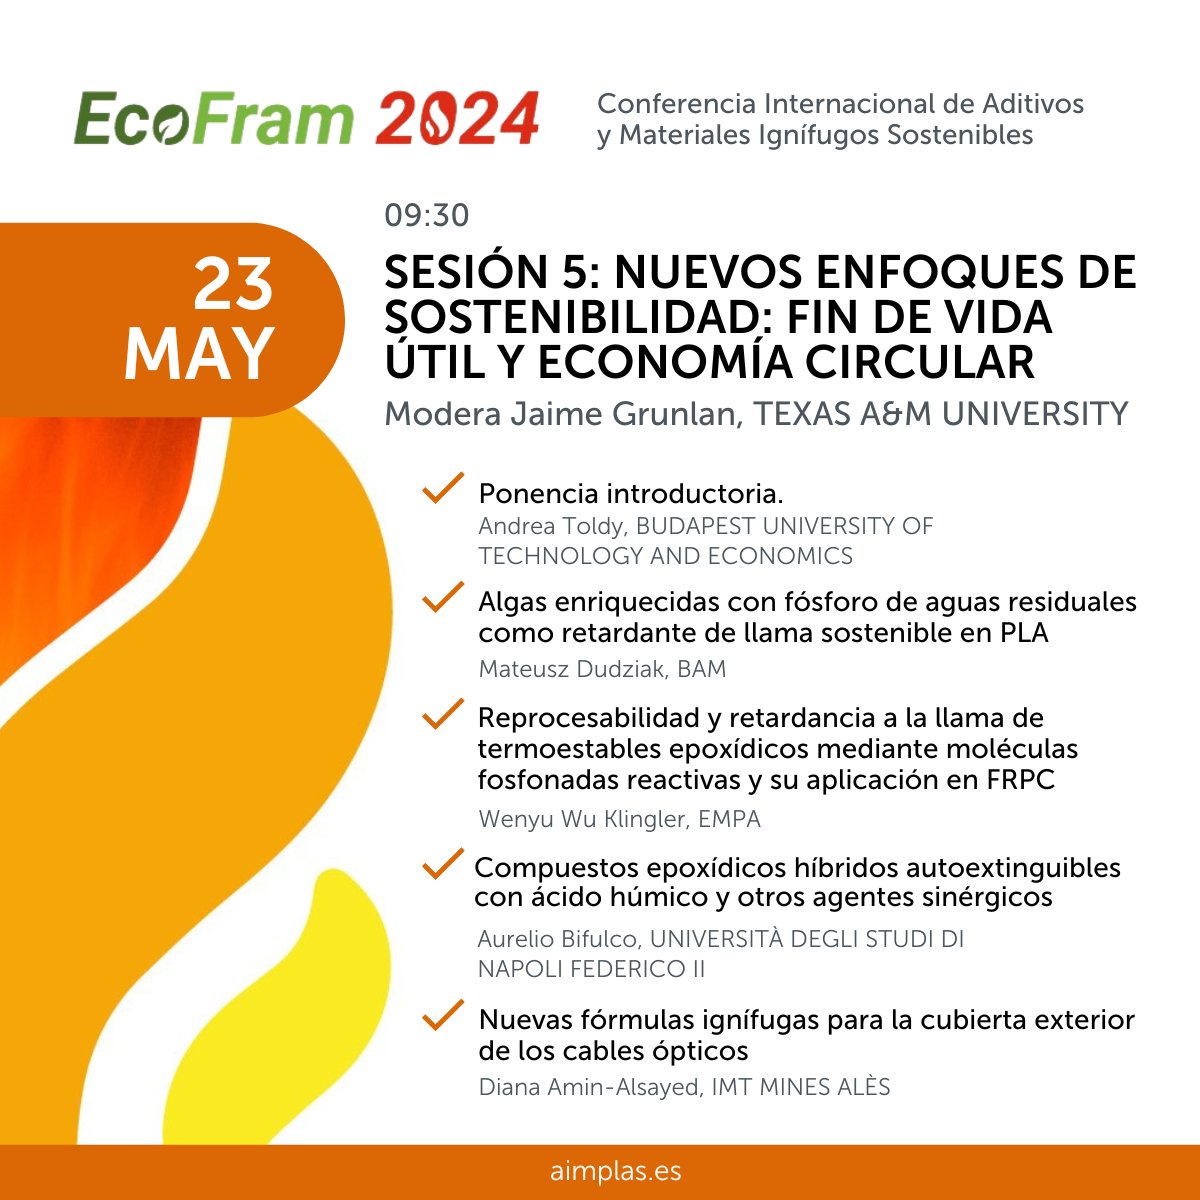 La quinta y última sesión de #EcoFRam será 'Nuevos enfoques de sostenibilidad: fin de vida útil y economía circular', y estará moderada por Jaime Grunlan, de la @TAMU. Conoce todo el programa e inscríbete desde aquí: bit.ly/4dxsBqu